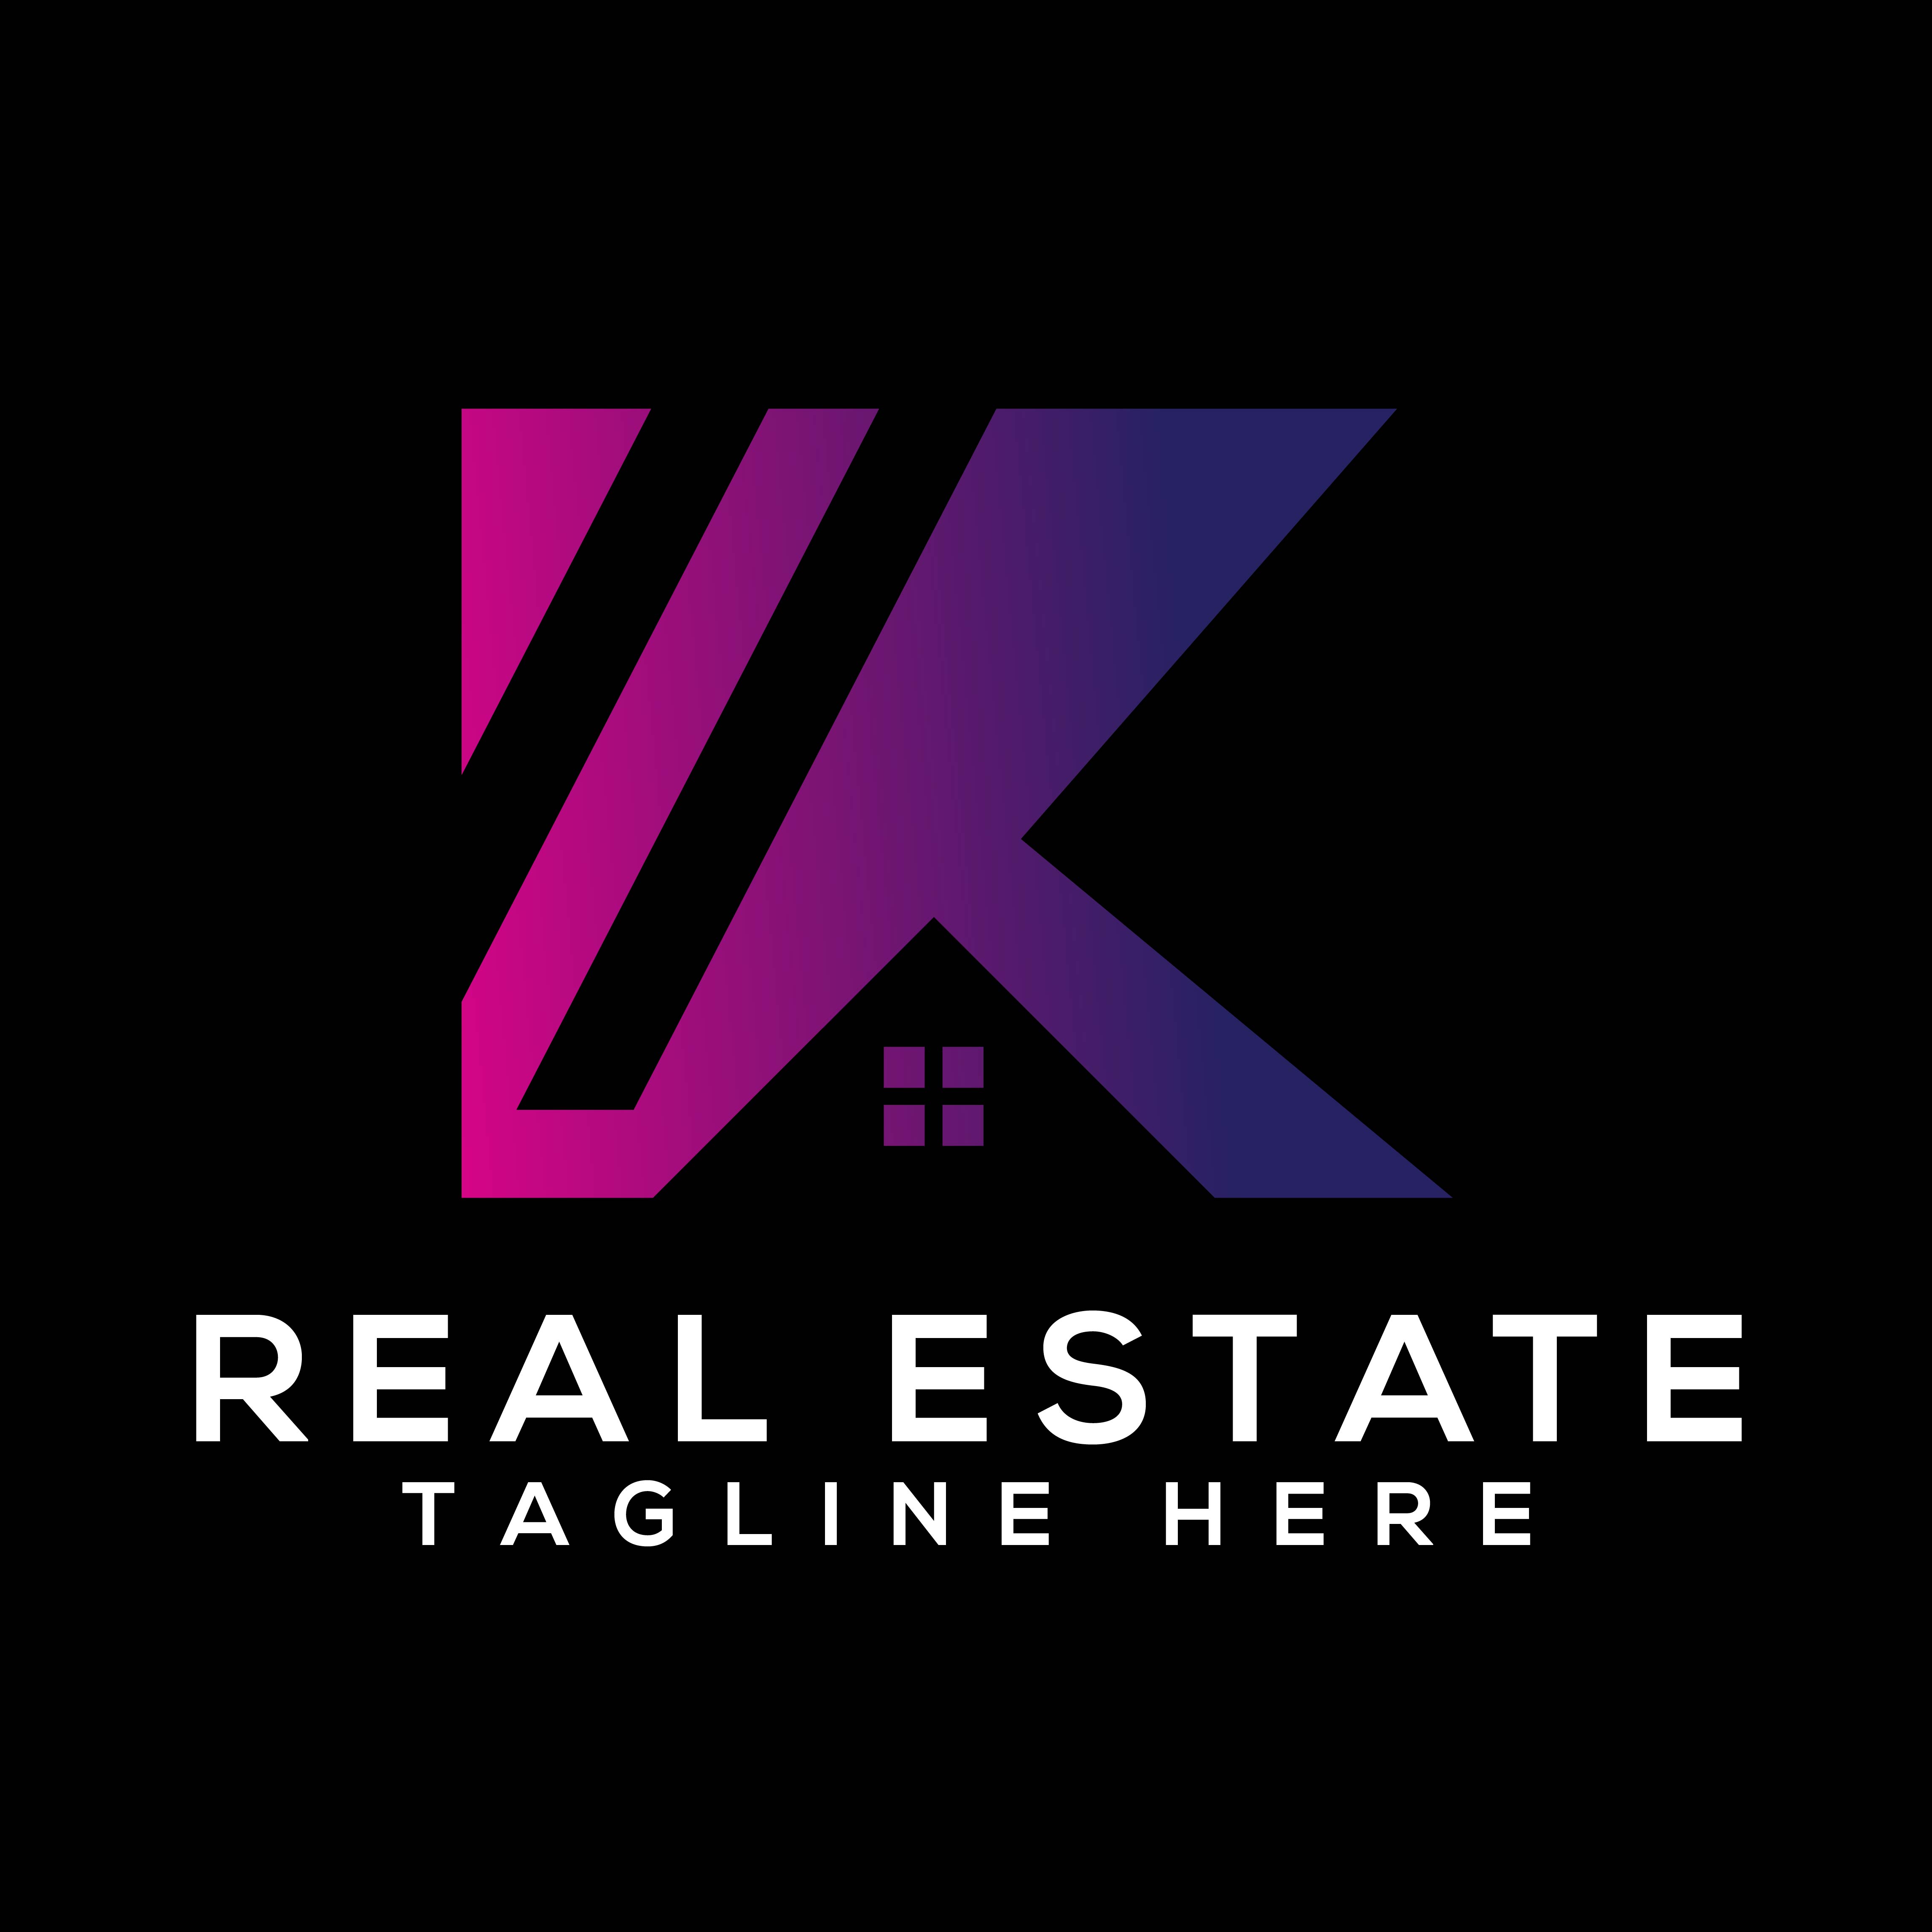 Real Estate Logo Letter K Design cover image.